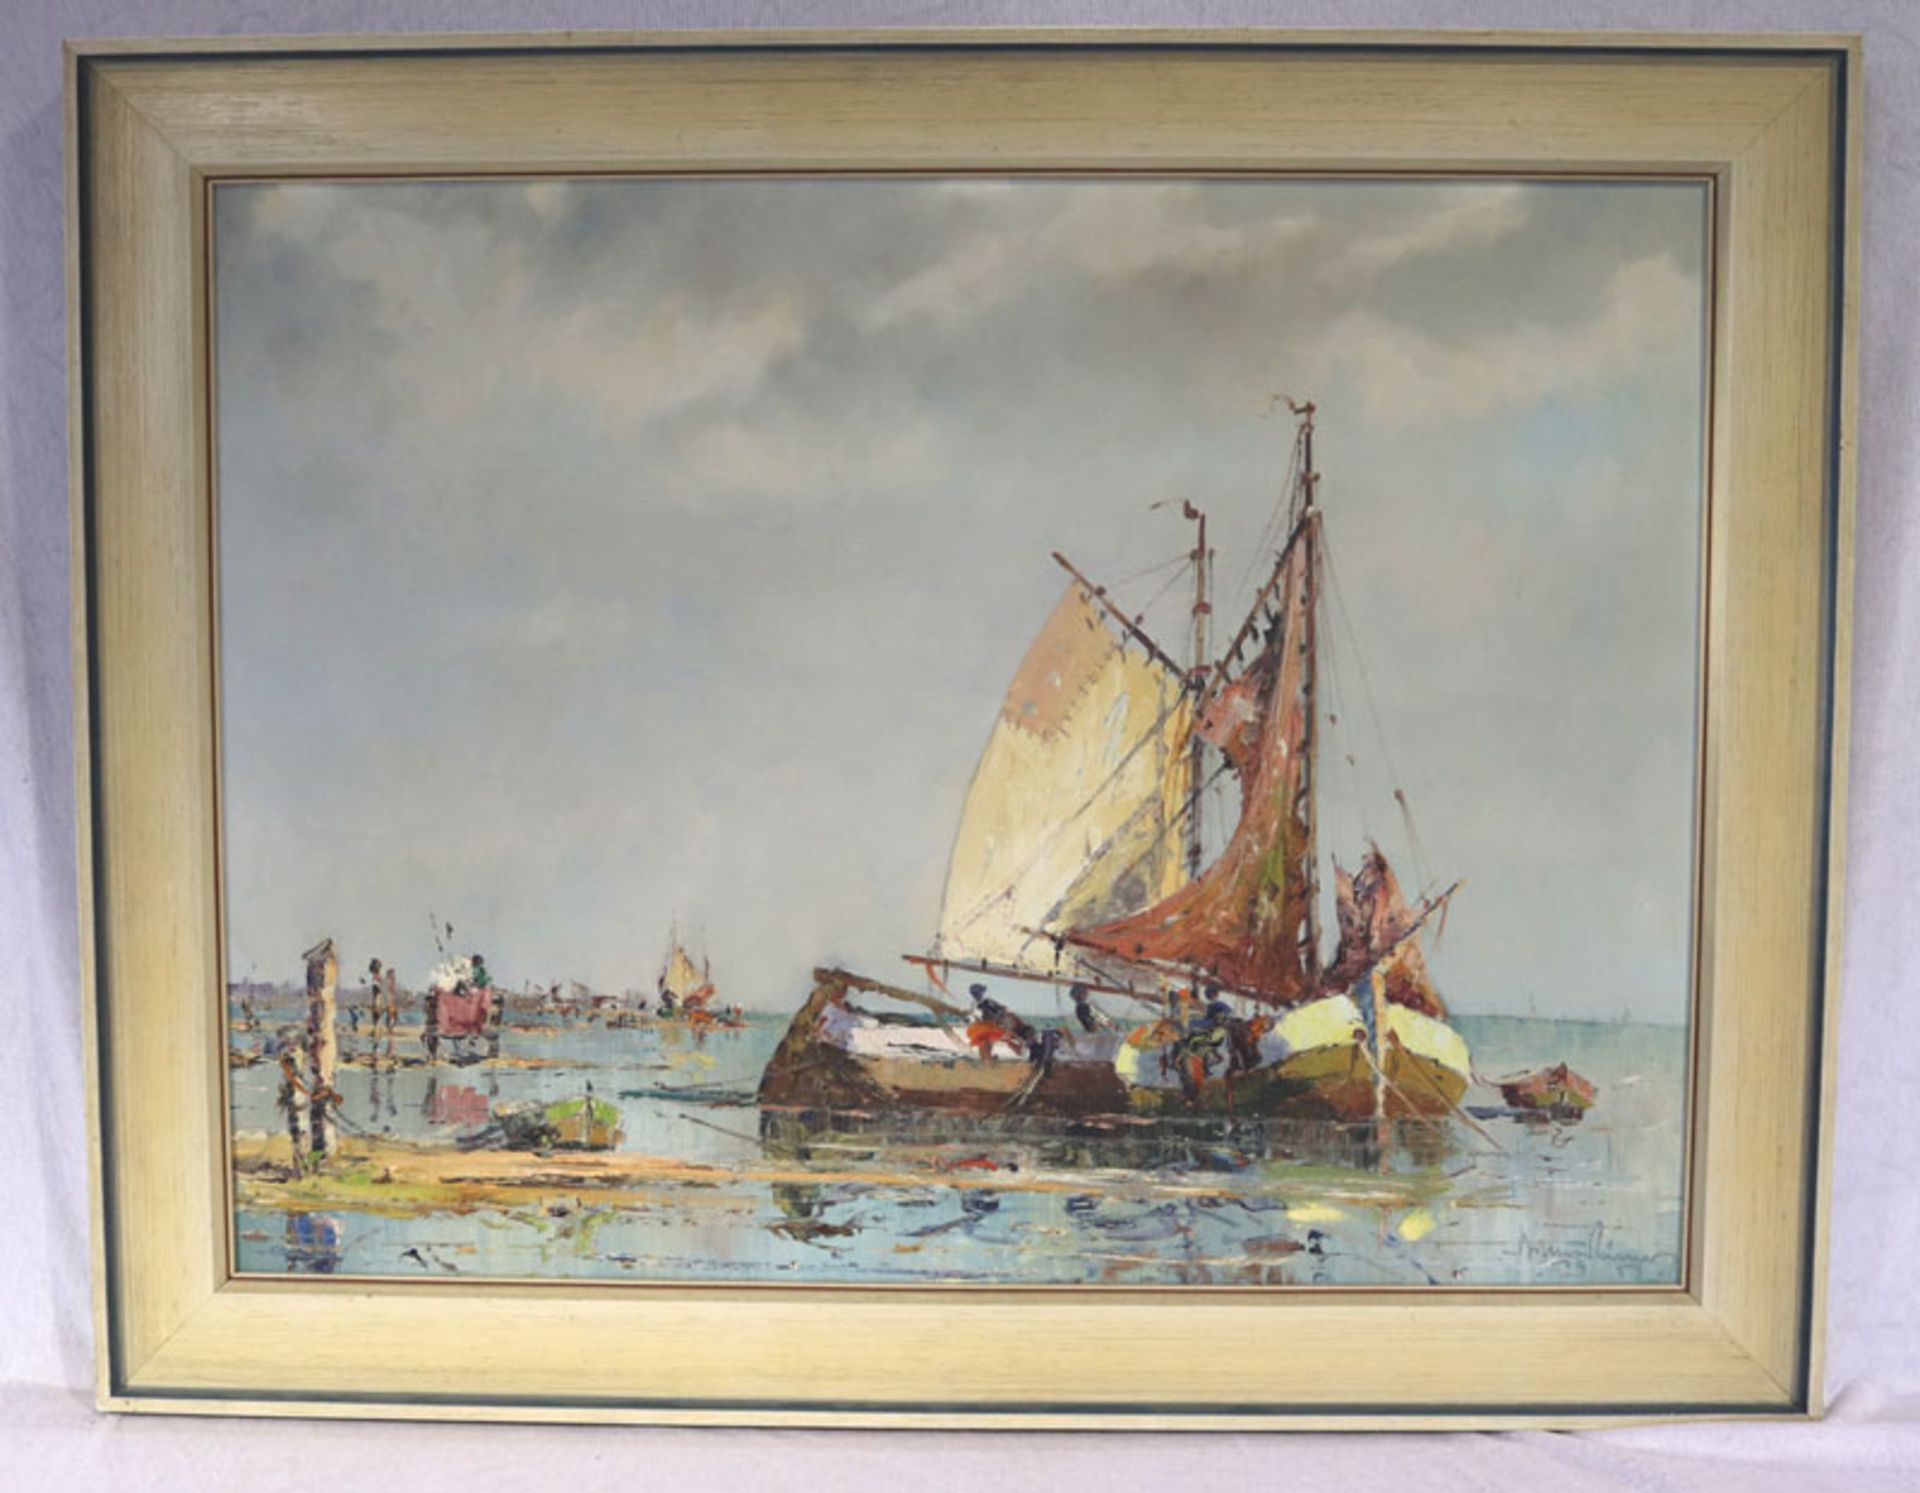 Gemälde ÖL/LW 'Küsten-Szenerie mit Segelbooten', signiert Arthur Hierer, Prof, * 1896 + 1985,